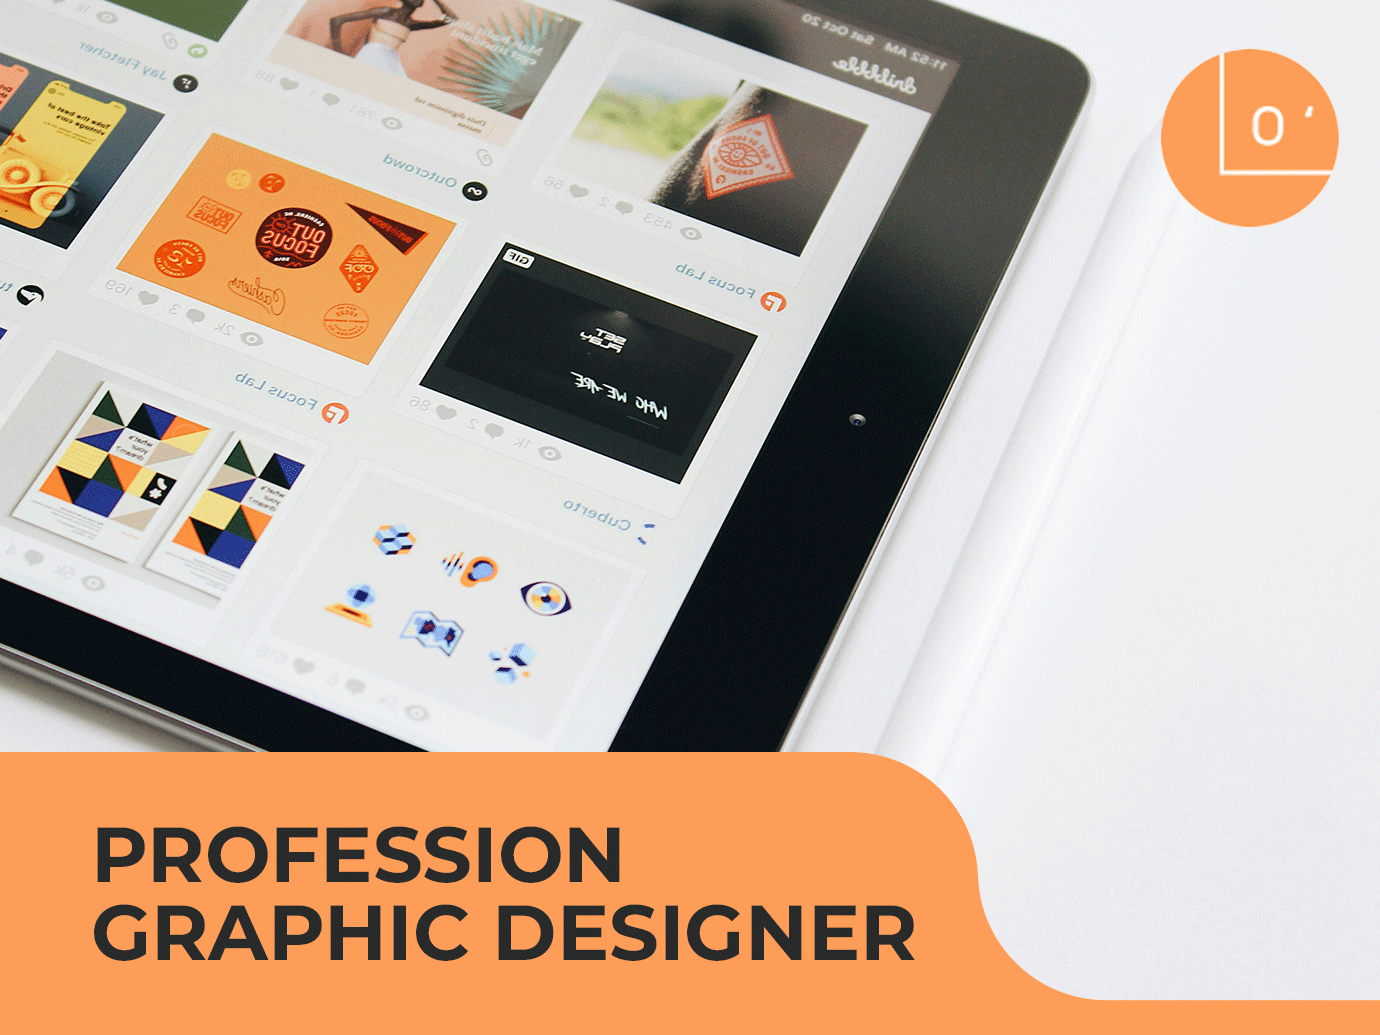 Profession graphic designer